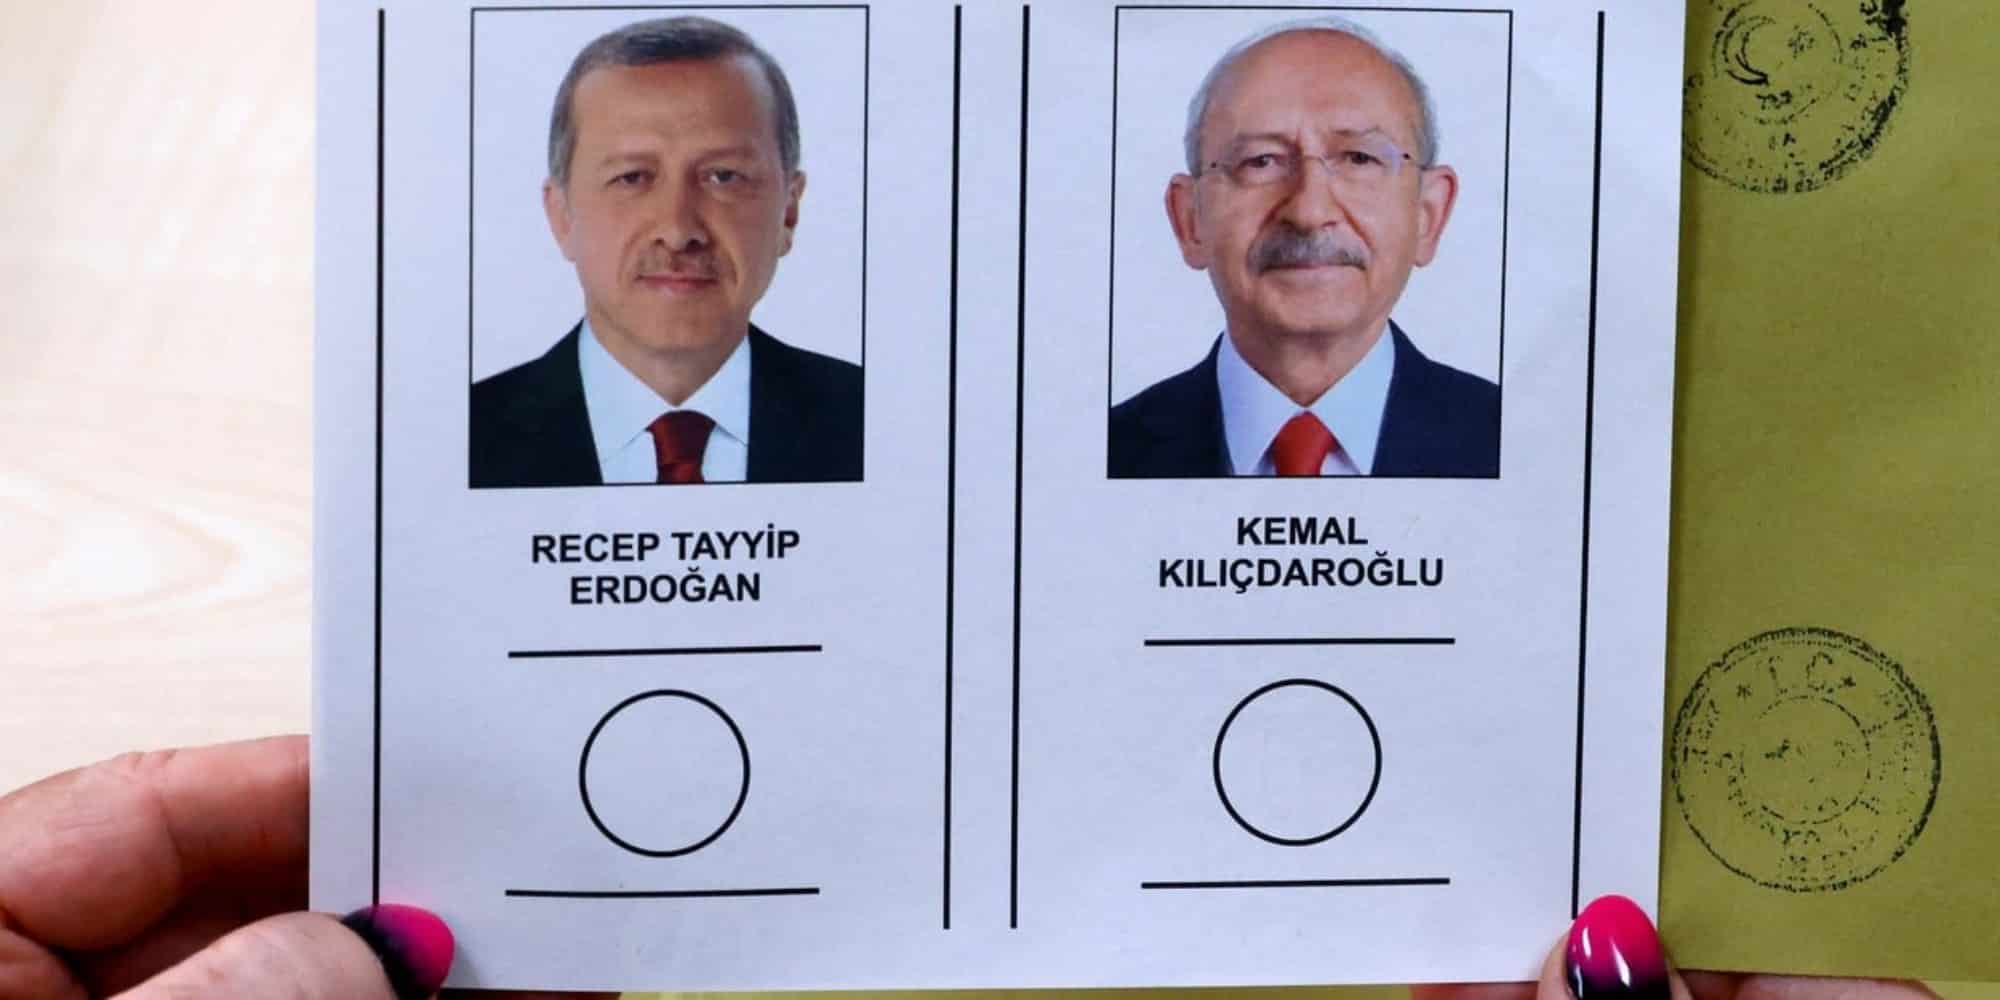 Εκλογές στην Τουρκία με Ερντογάν και Κιλιτσντάρογλου